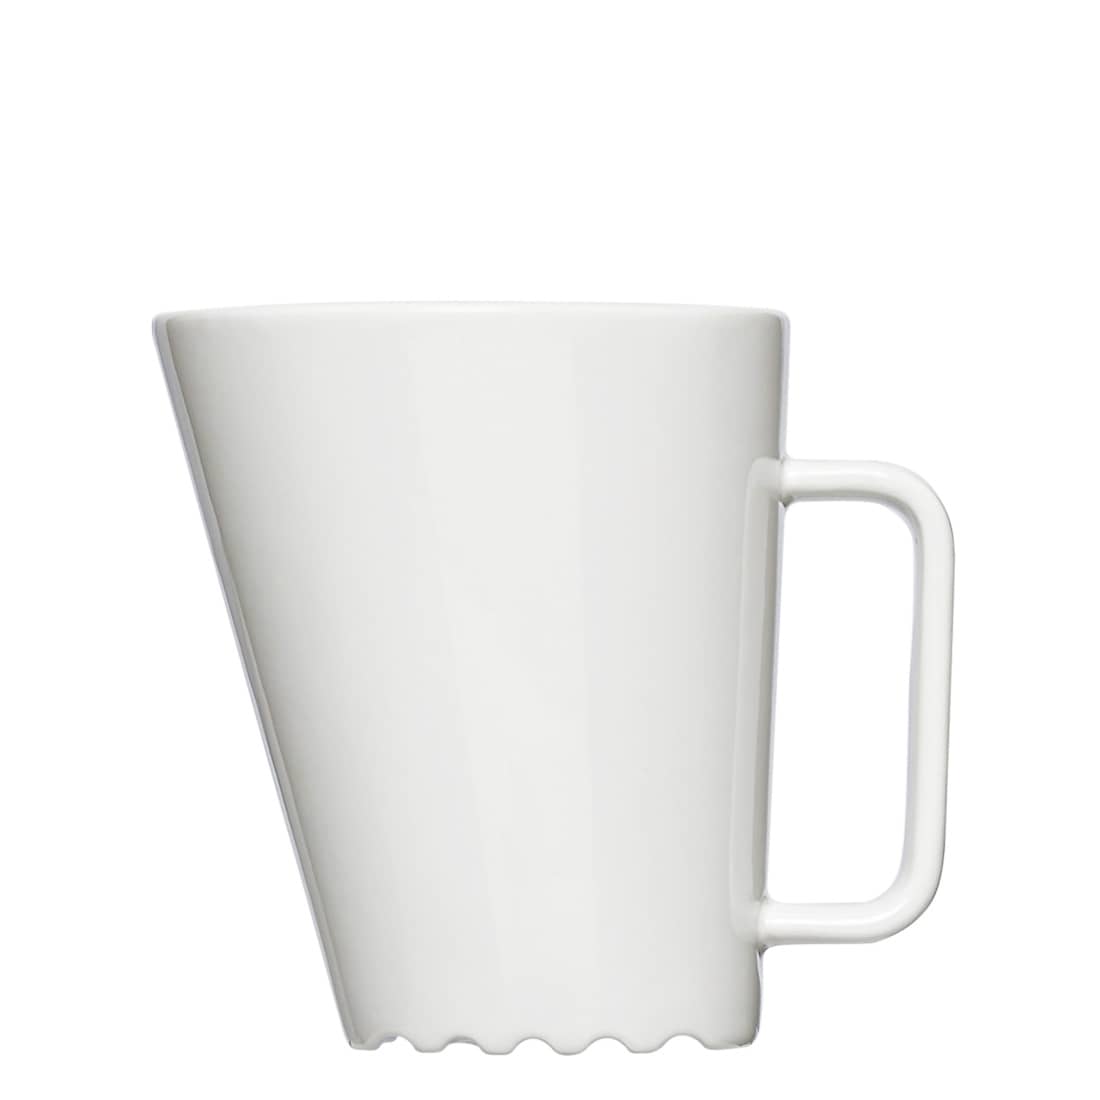 Schräge Kaffeetasse Form 300 zum bedrucken mit einem Logo oder einer Grafik als Werbegeschenk, Werbeartikel oder Werbemittel